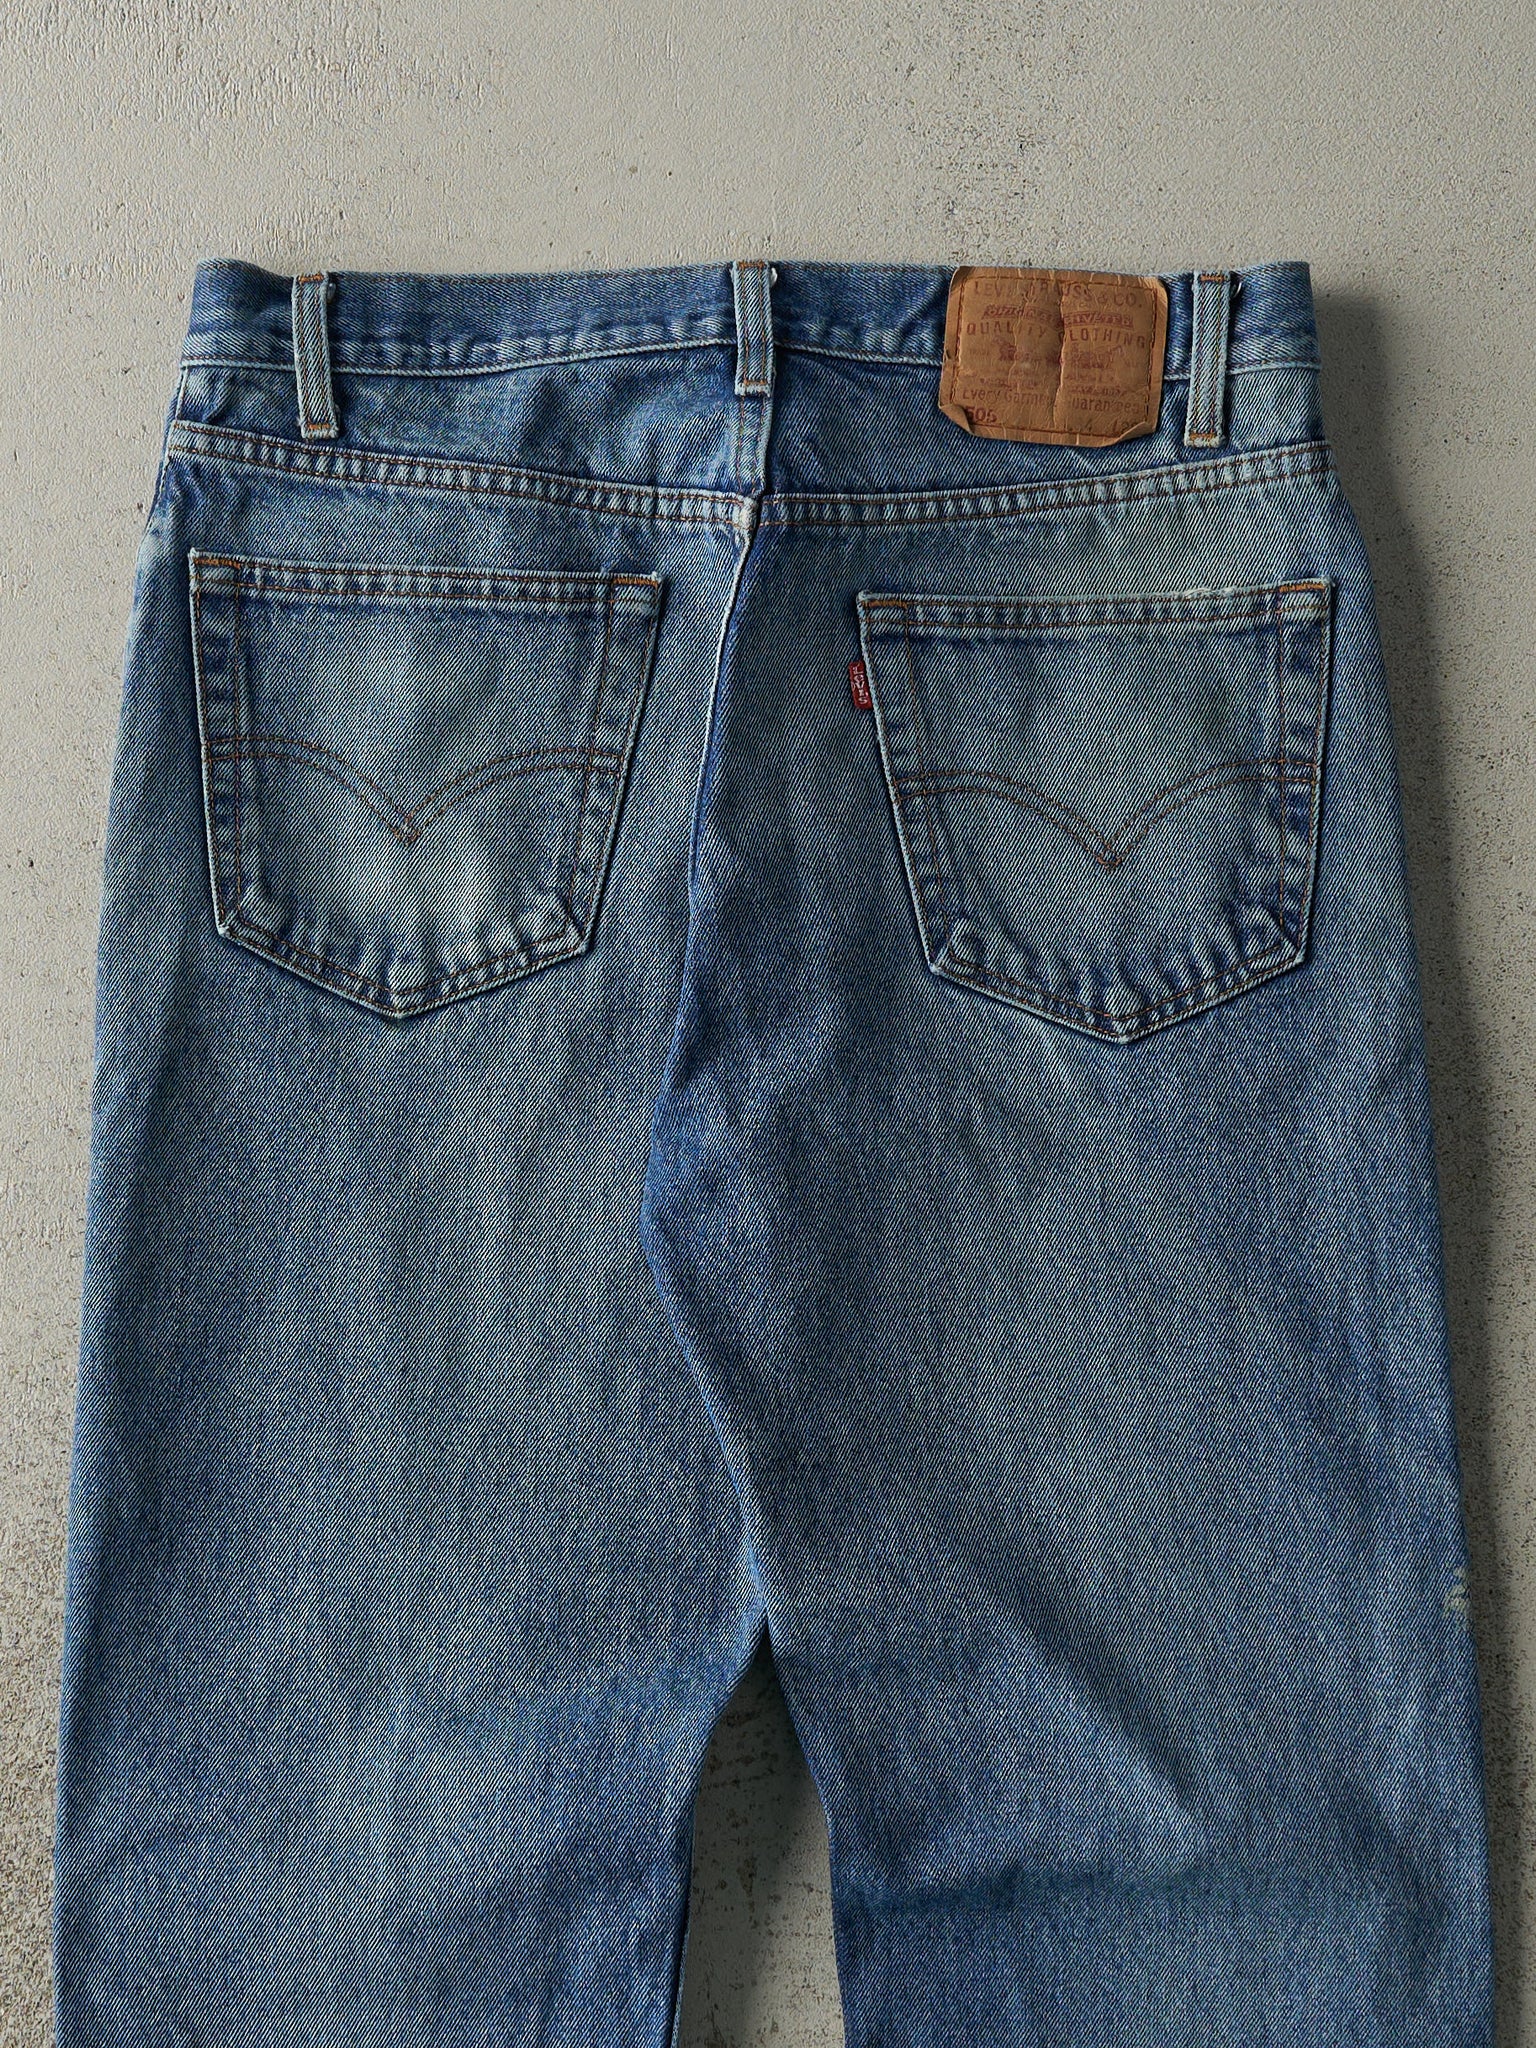 Vintage 80s Mid Wash Levi's 505 Jeans (33x26.5)